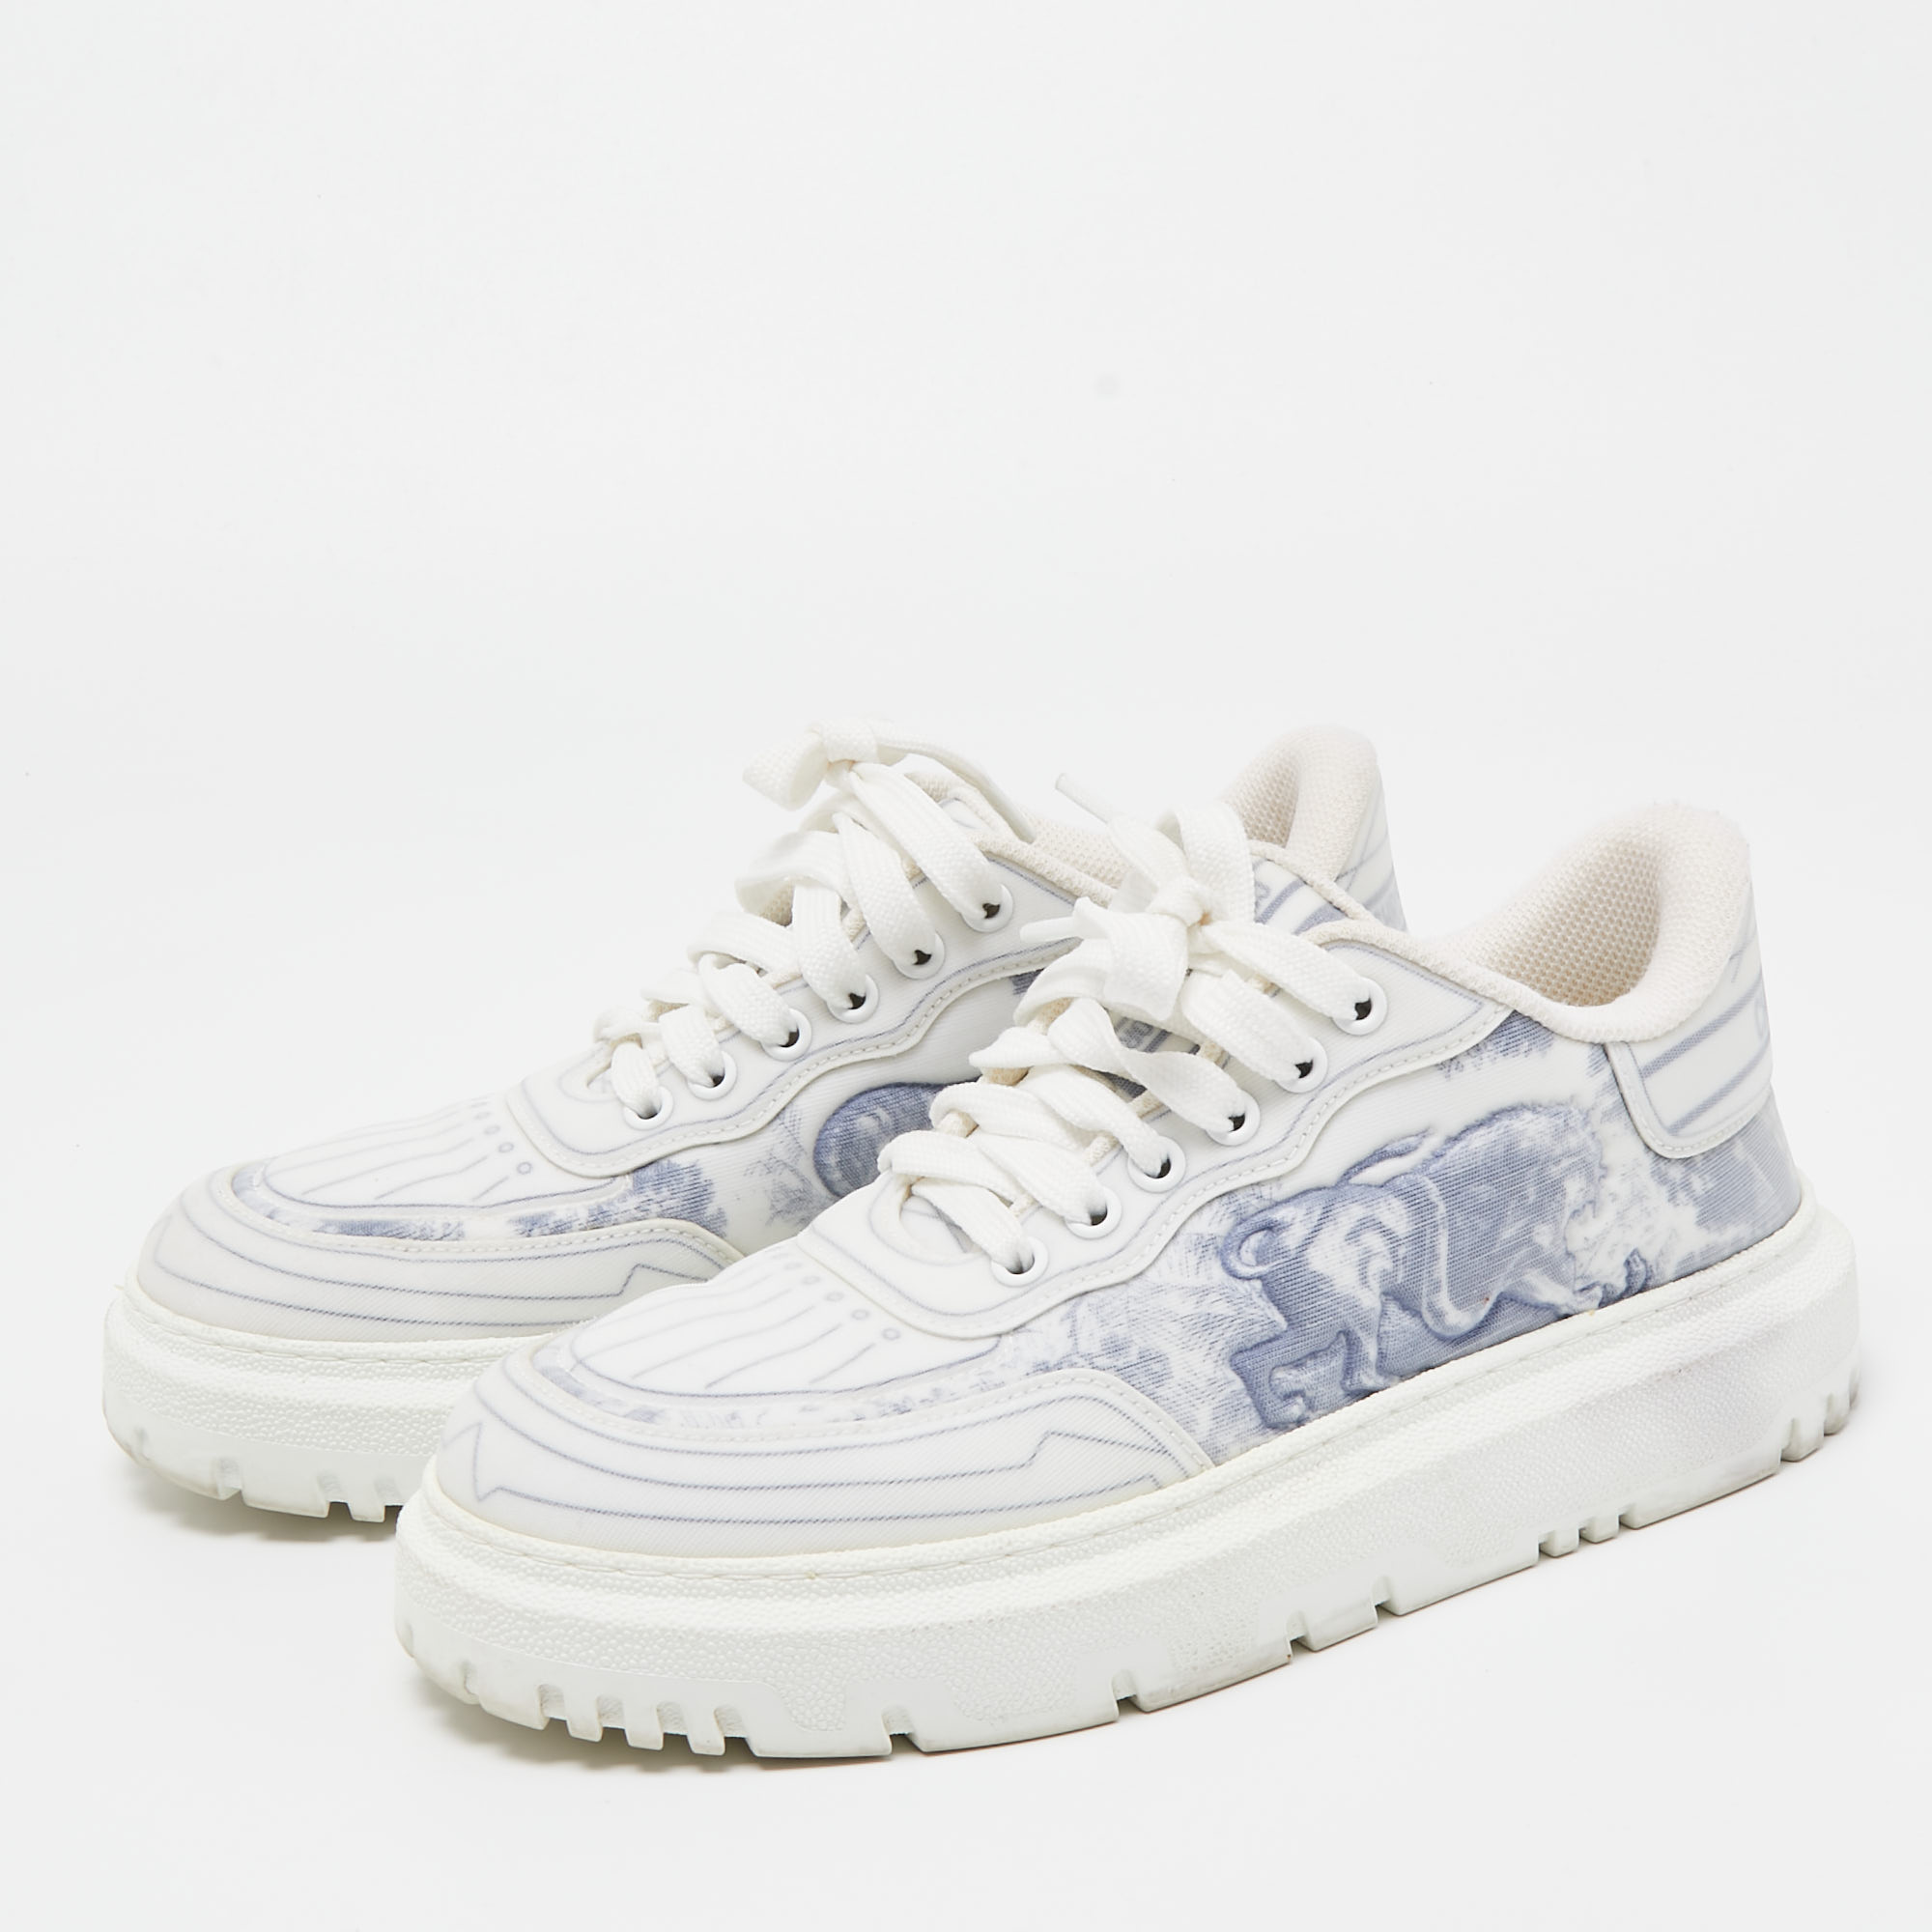 

Dior White/Blue Toile De Jouy Fabric Dior Addict Sneakers Size